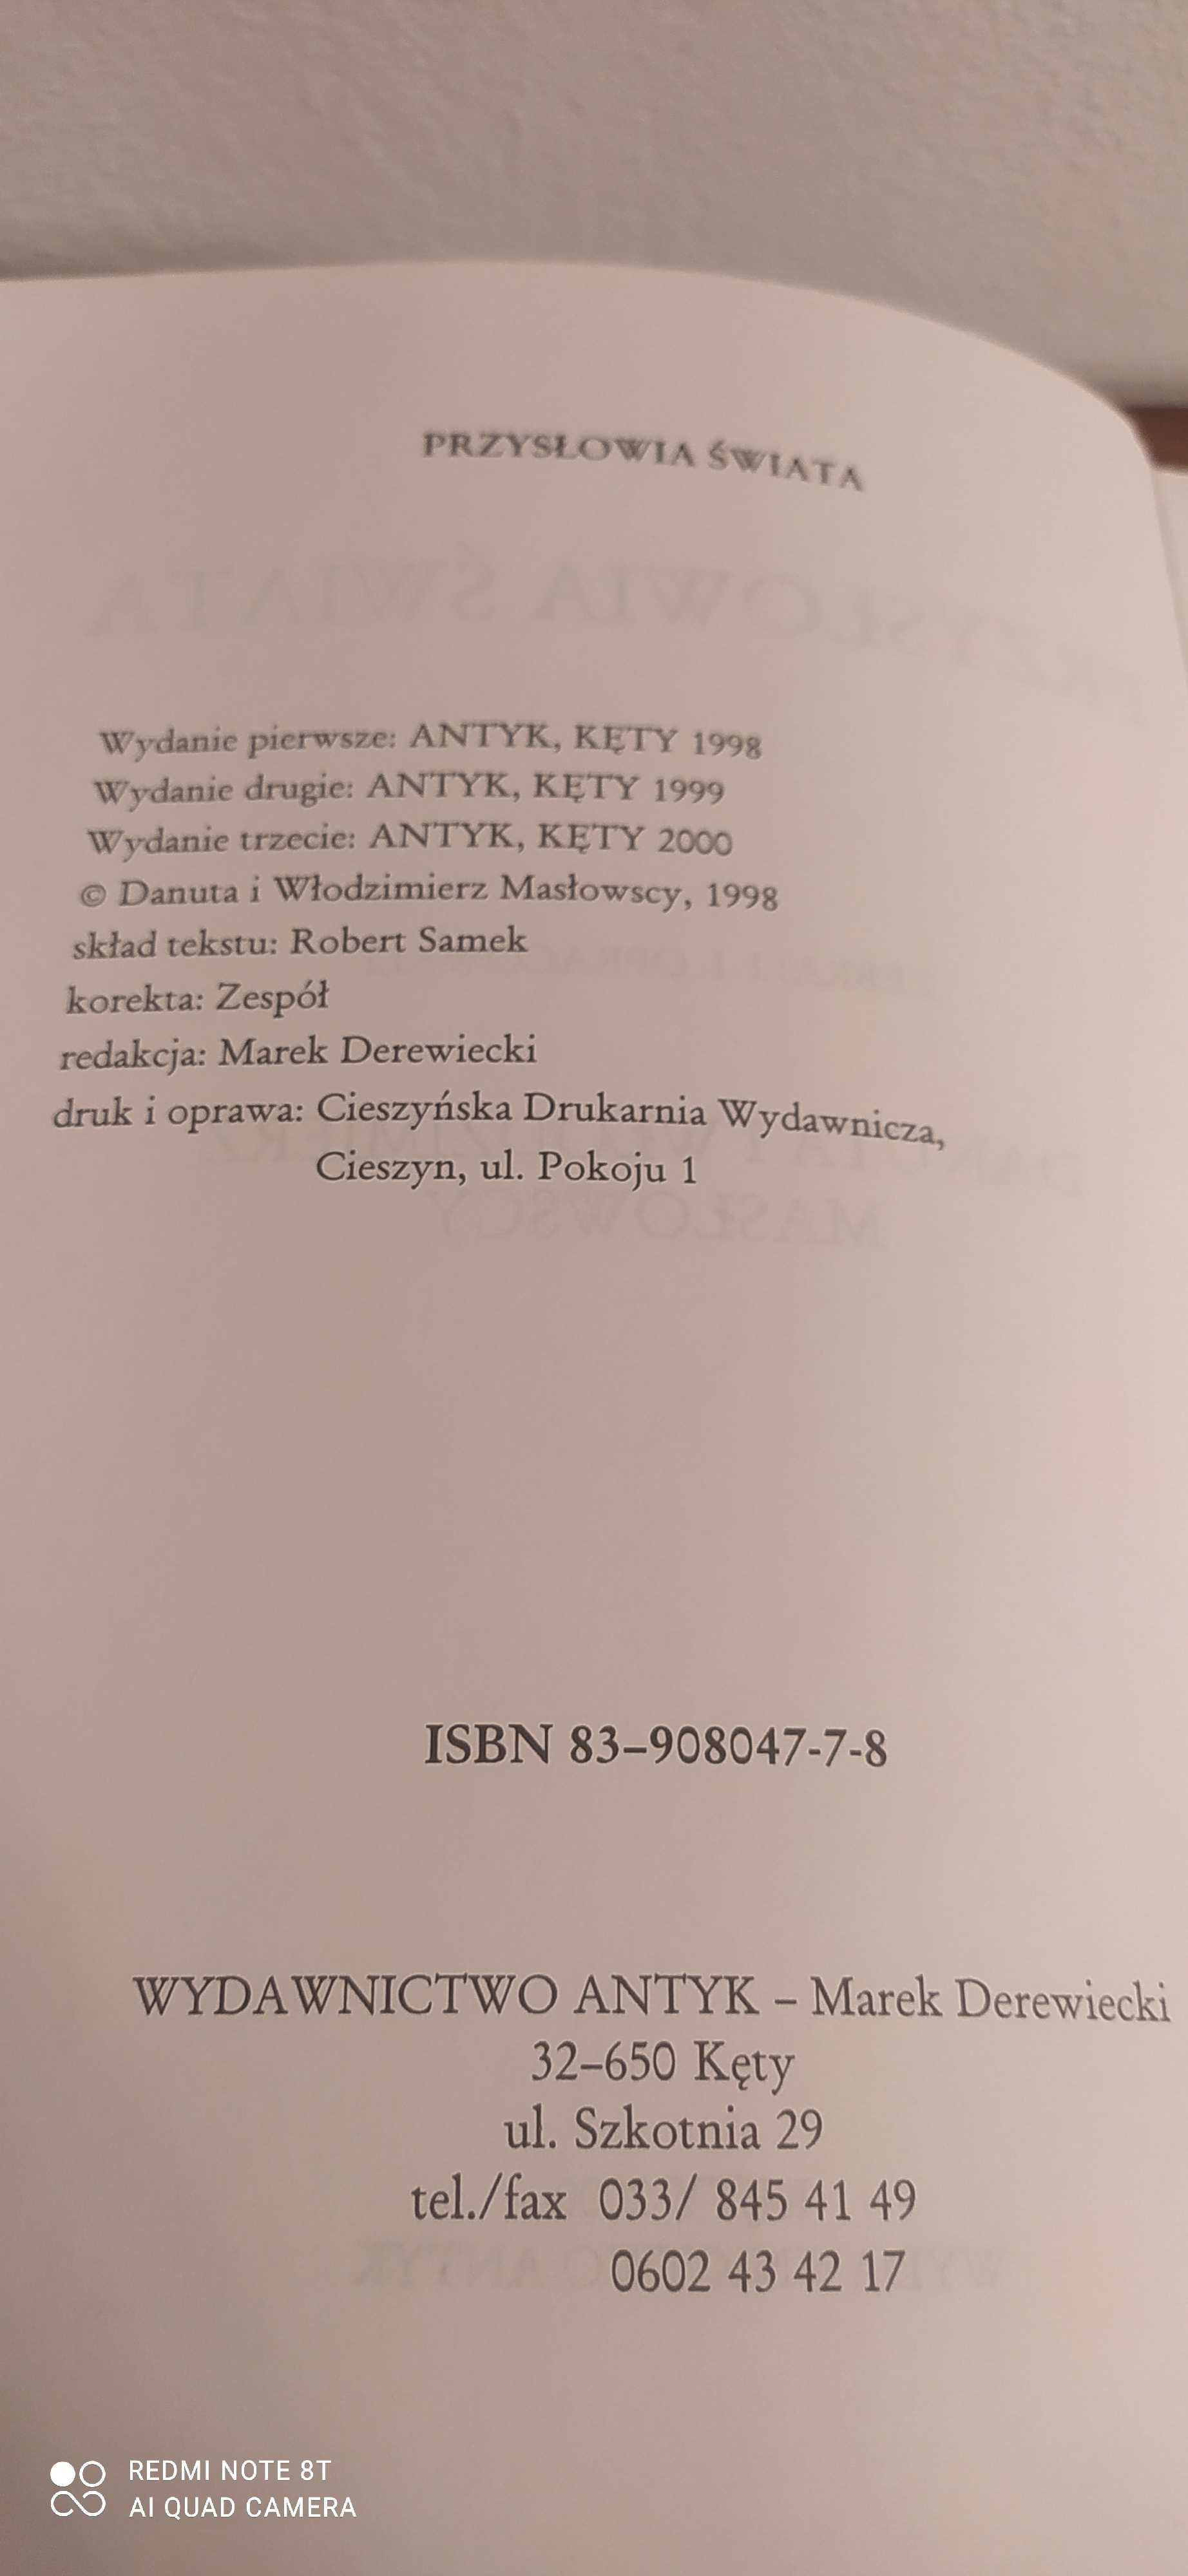 Przysłowia świata, Maslowscy, Wydawnictwo Antyk, ładne wydanie